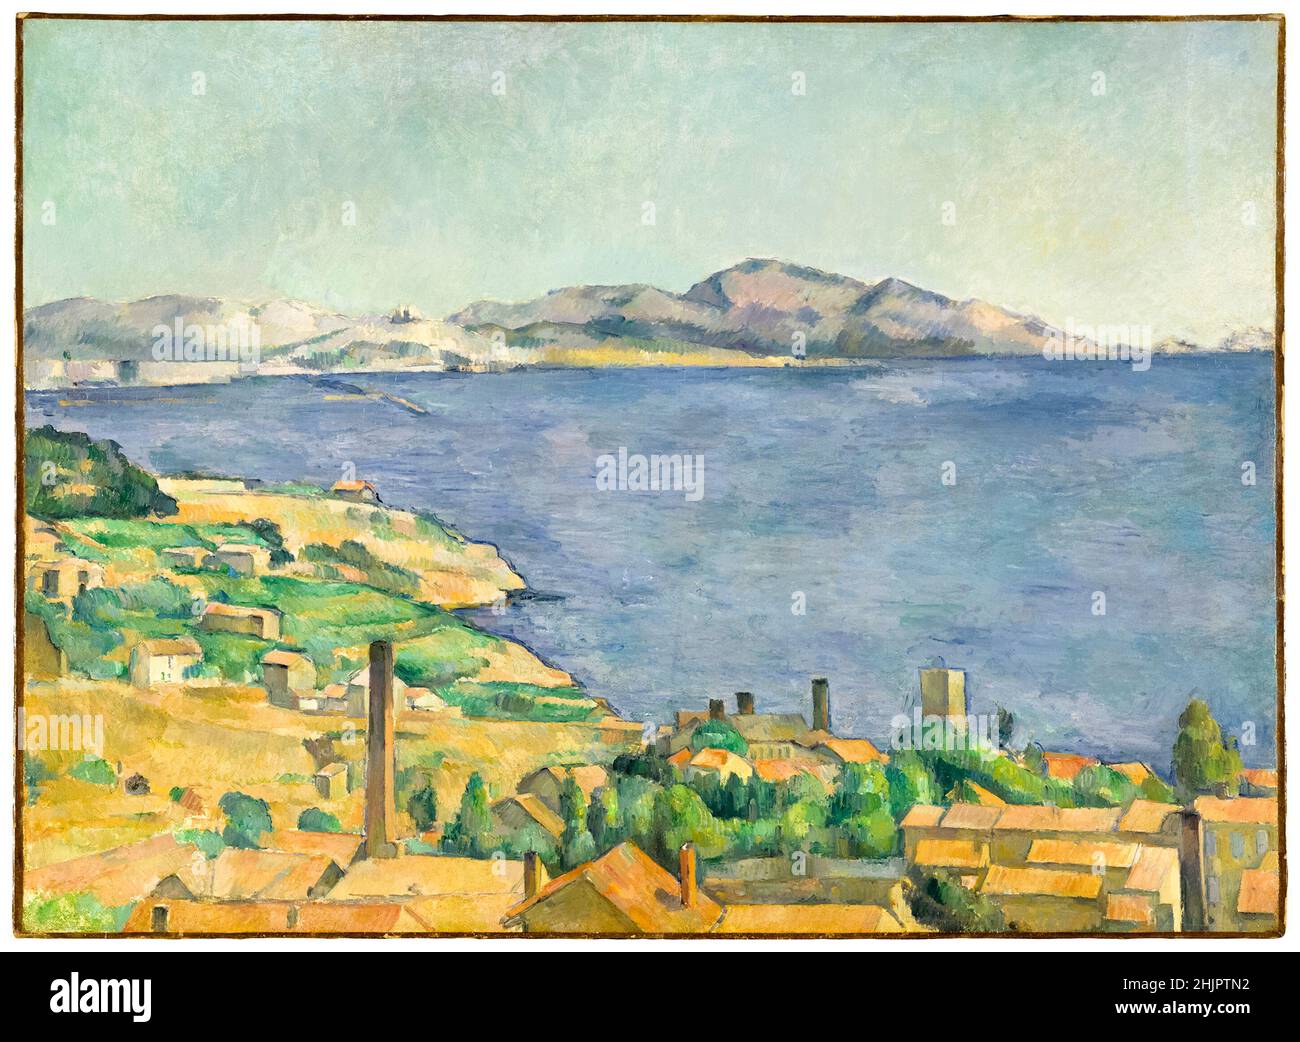 Le golfe de Marseille, vu de l'Estaque, peinture paysagère de Paul Cézanne, vers 1885 Banque D'Images